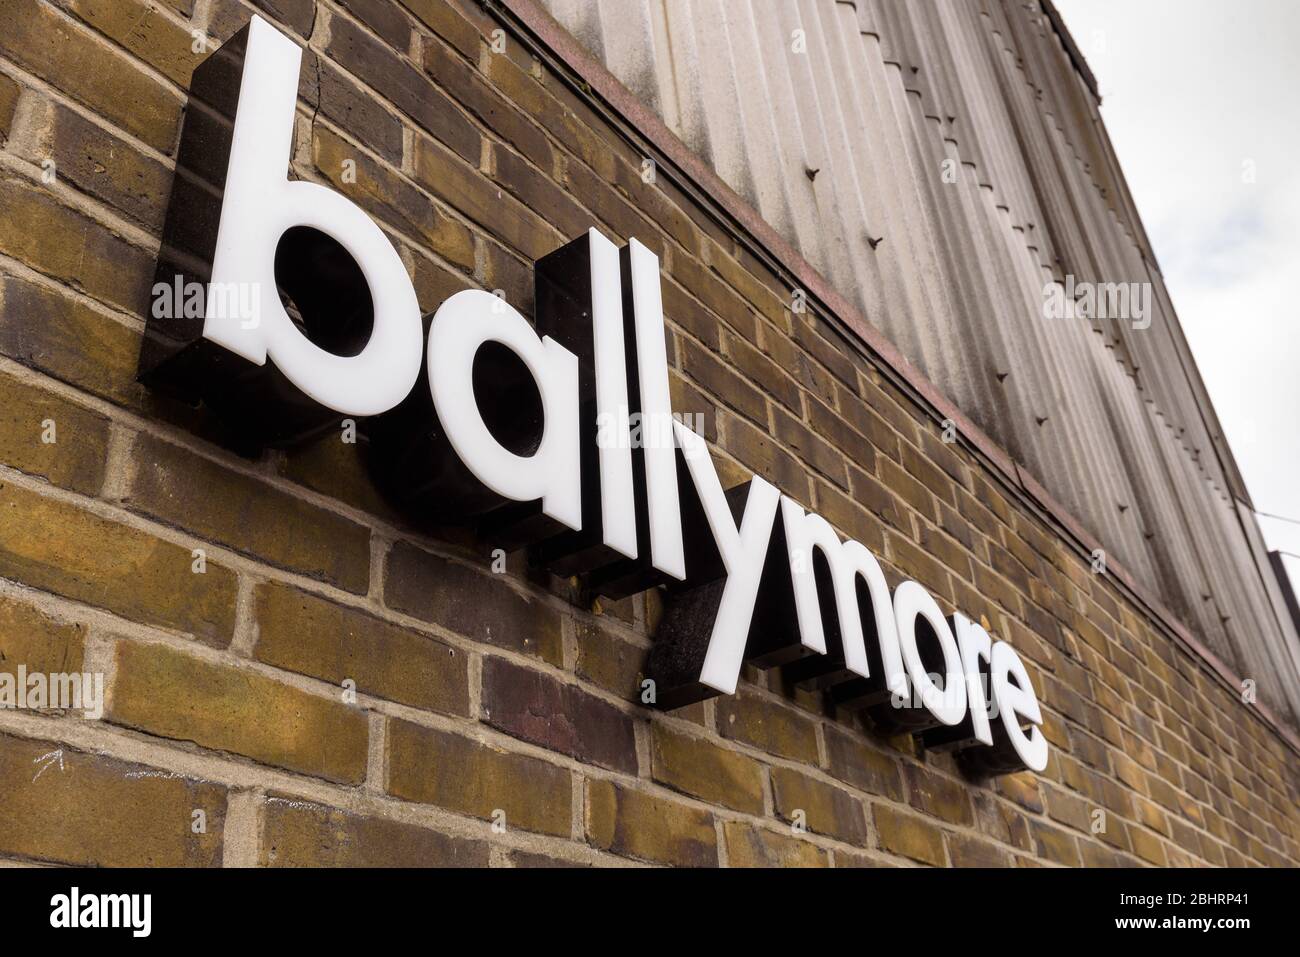 Londra, Inghilterra. Logo Ballymore Group. Società internazionale di sviluppo immobiliare con sede in Irlanda, nuova zona di sviluppo di Londra est Foto Stock